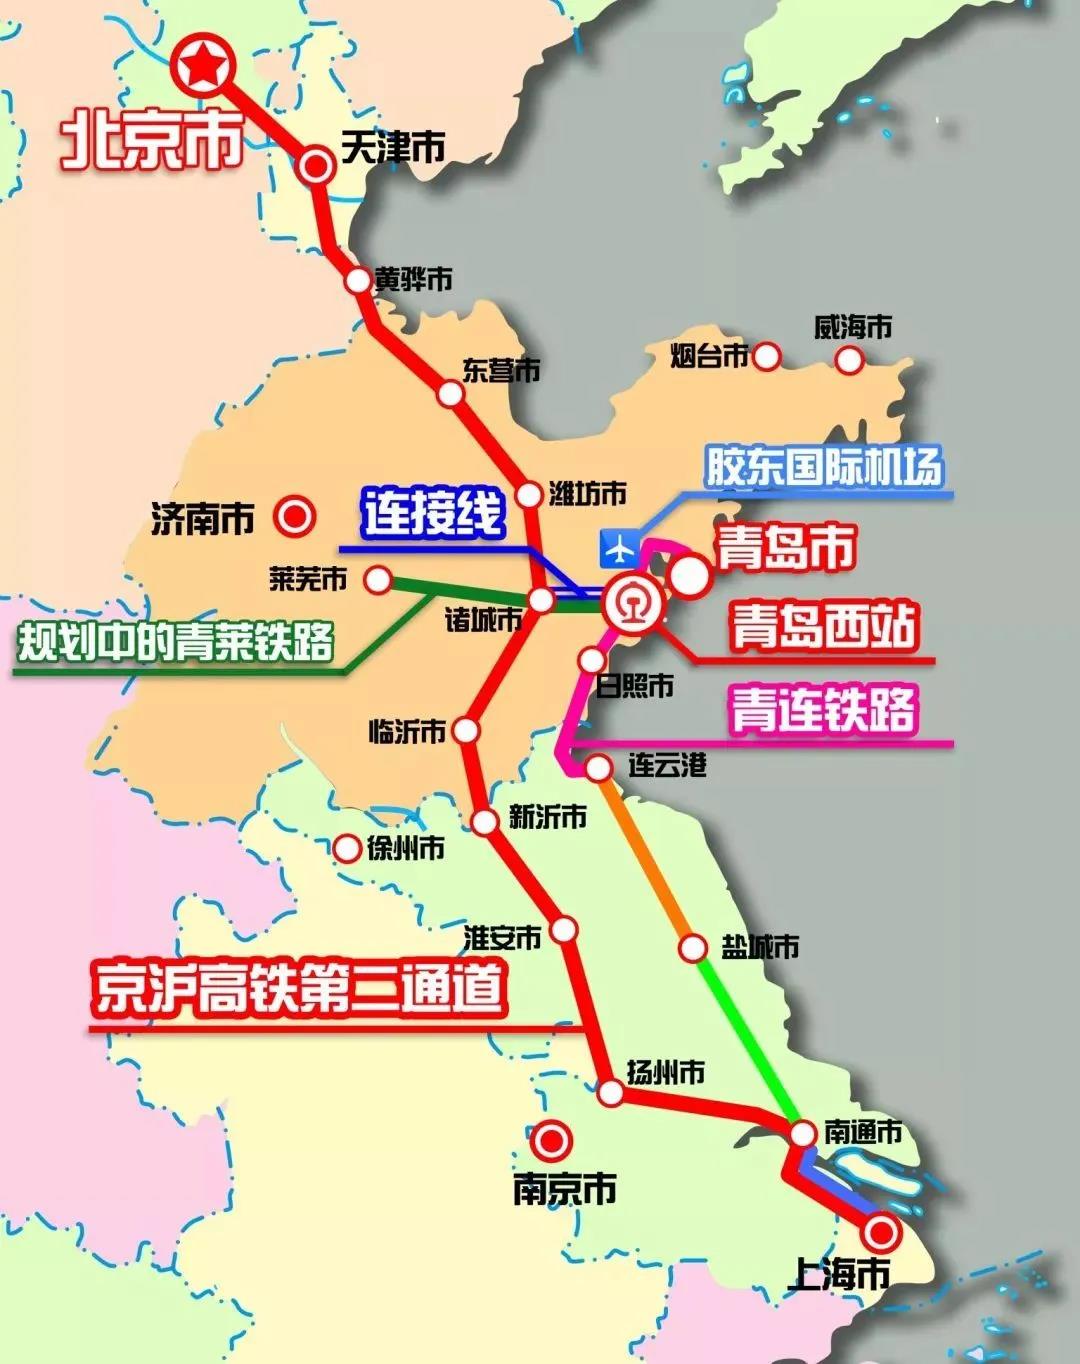 为什么说沪苏湖铁路是“建在桥上的高铁线”？如何兼顾跨越施工和现有通道通行？施工专家为您详解_国内 _ 文汇网